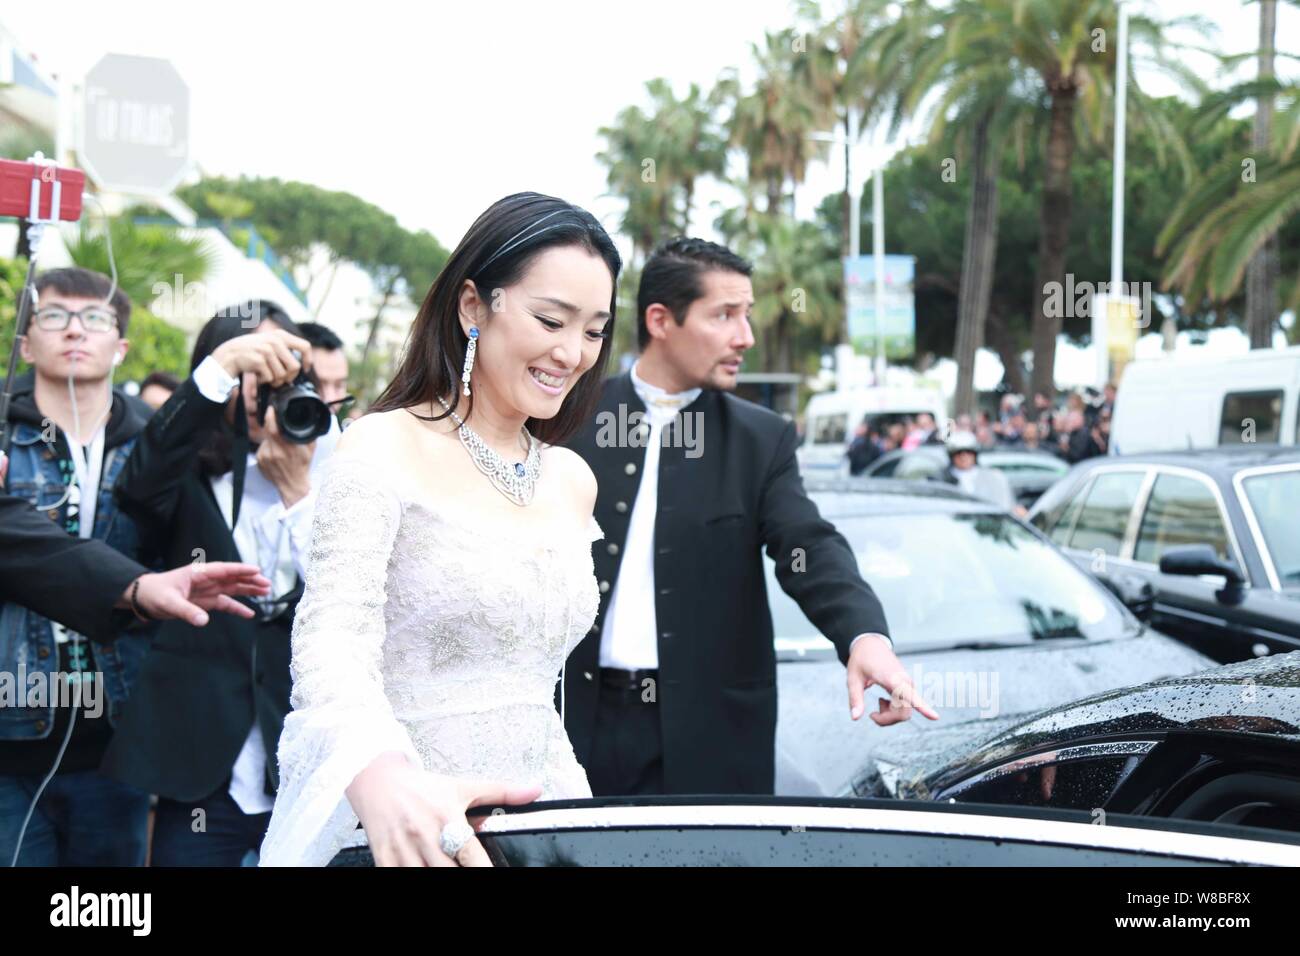 Chinesische Schauspielerin Gong Li kommt an der L'Oreal Cocktail Party während des 69. Filmfestival in Cannes Cannes, Frankreich, 11. Mai 2016. Stockfoto